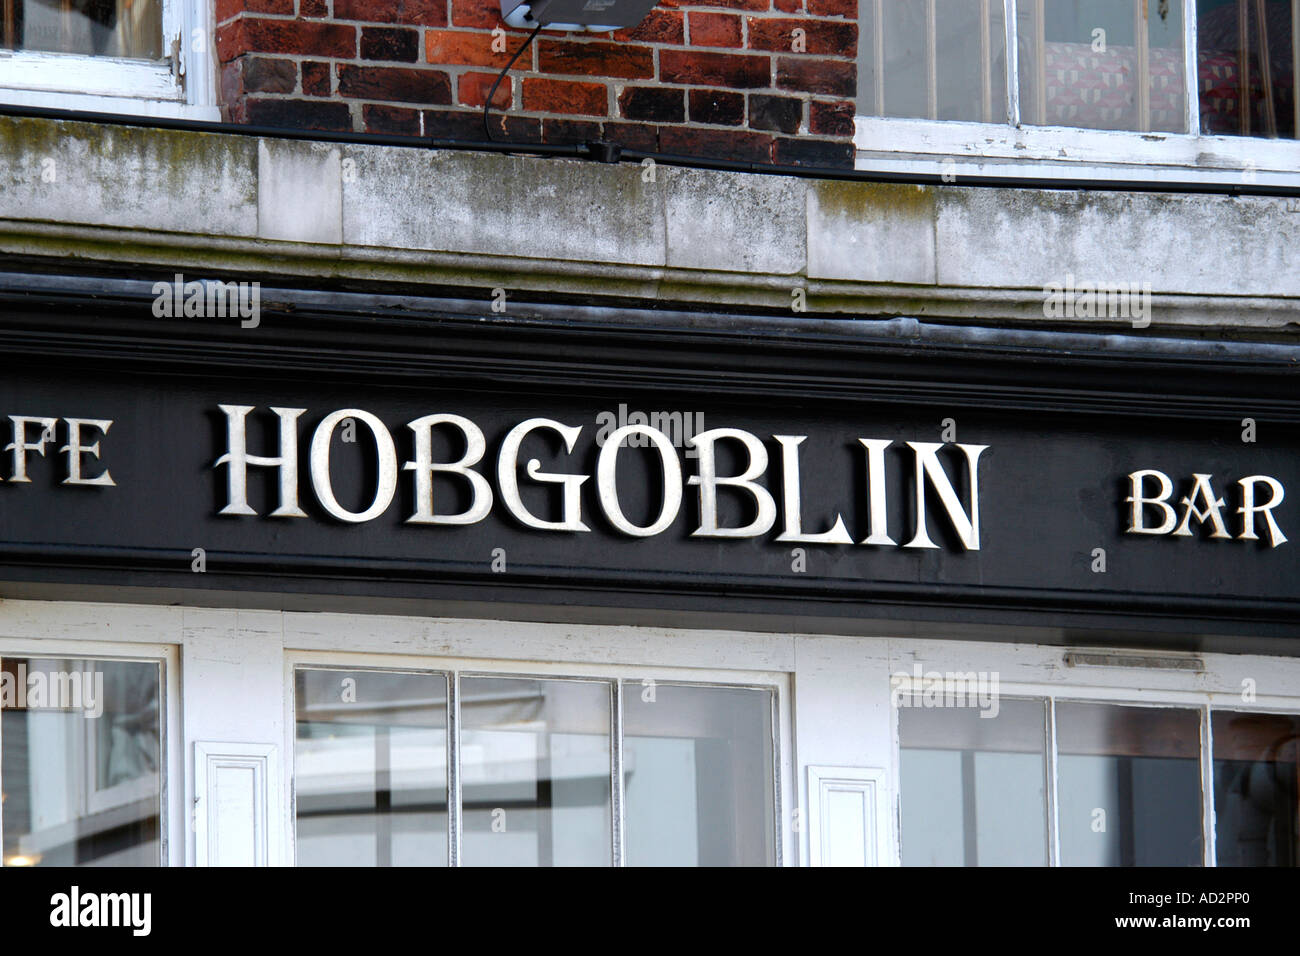 The Hobgoblin Bar sign Stock Photo